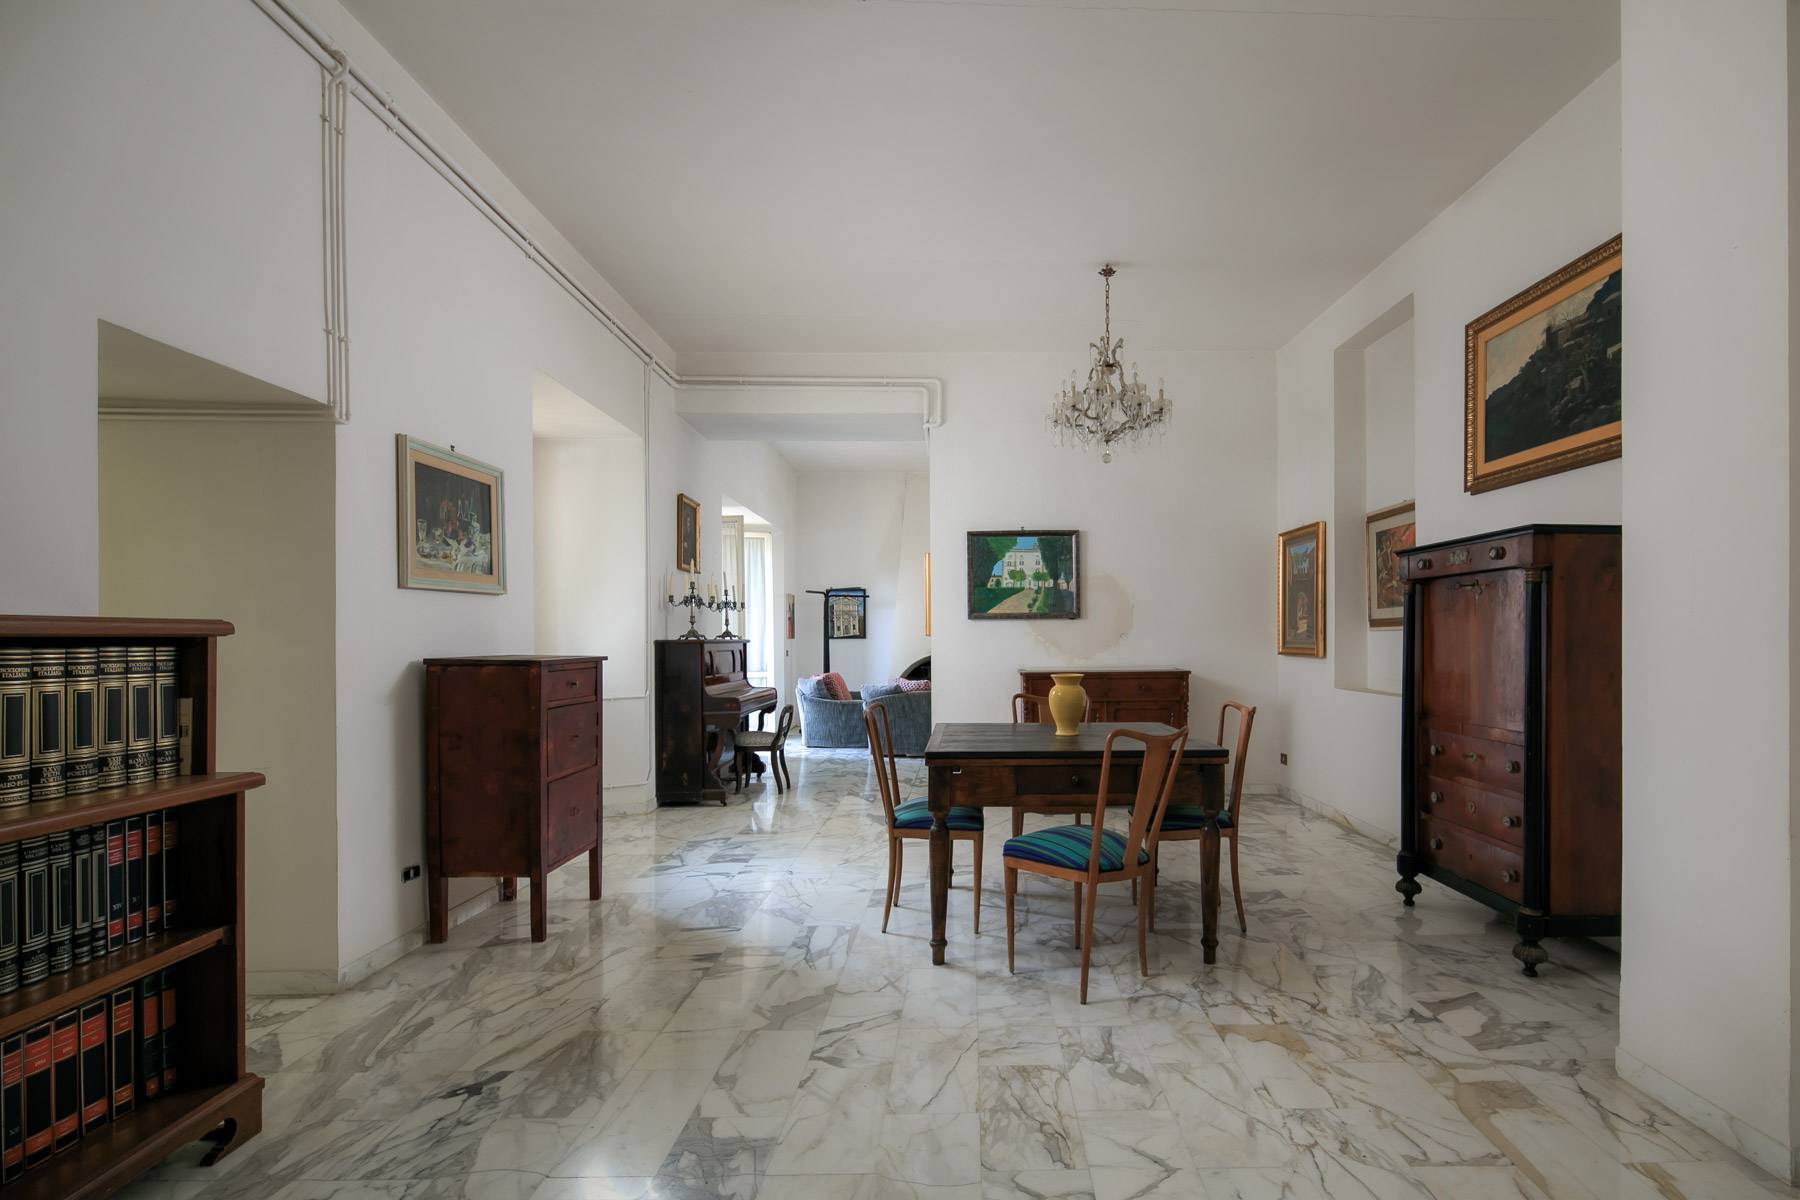 Villa in Vendita a Montepulciano: 5 locali, 2400 mq - Foto 7